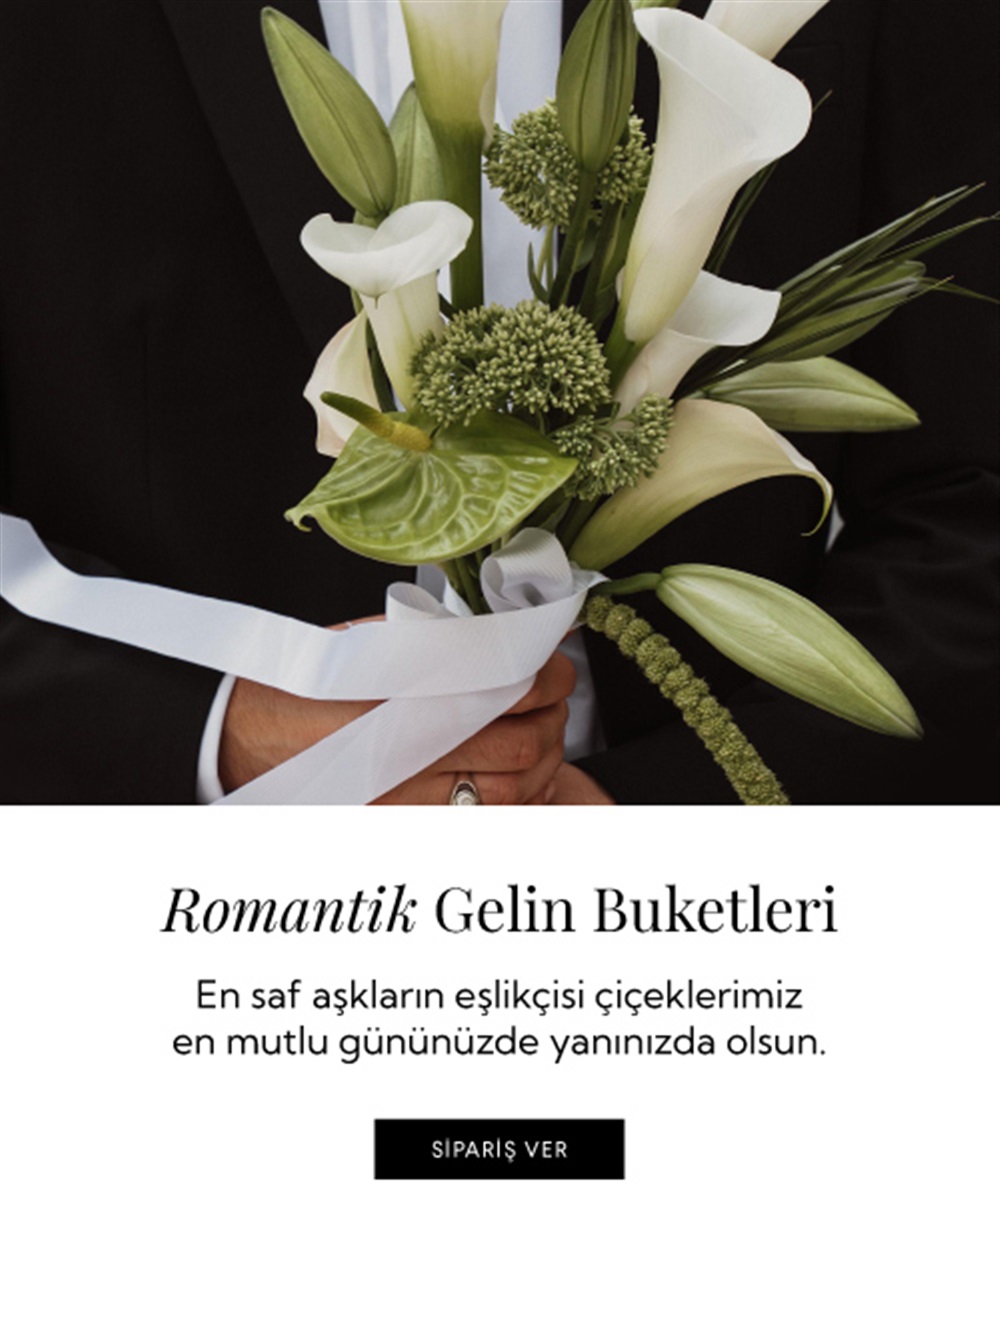 Ribbon Flowers İstanbul: Aynı Gün Online Lüks Çiçek Gönder